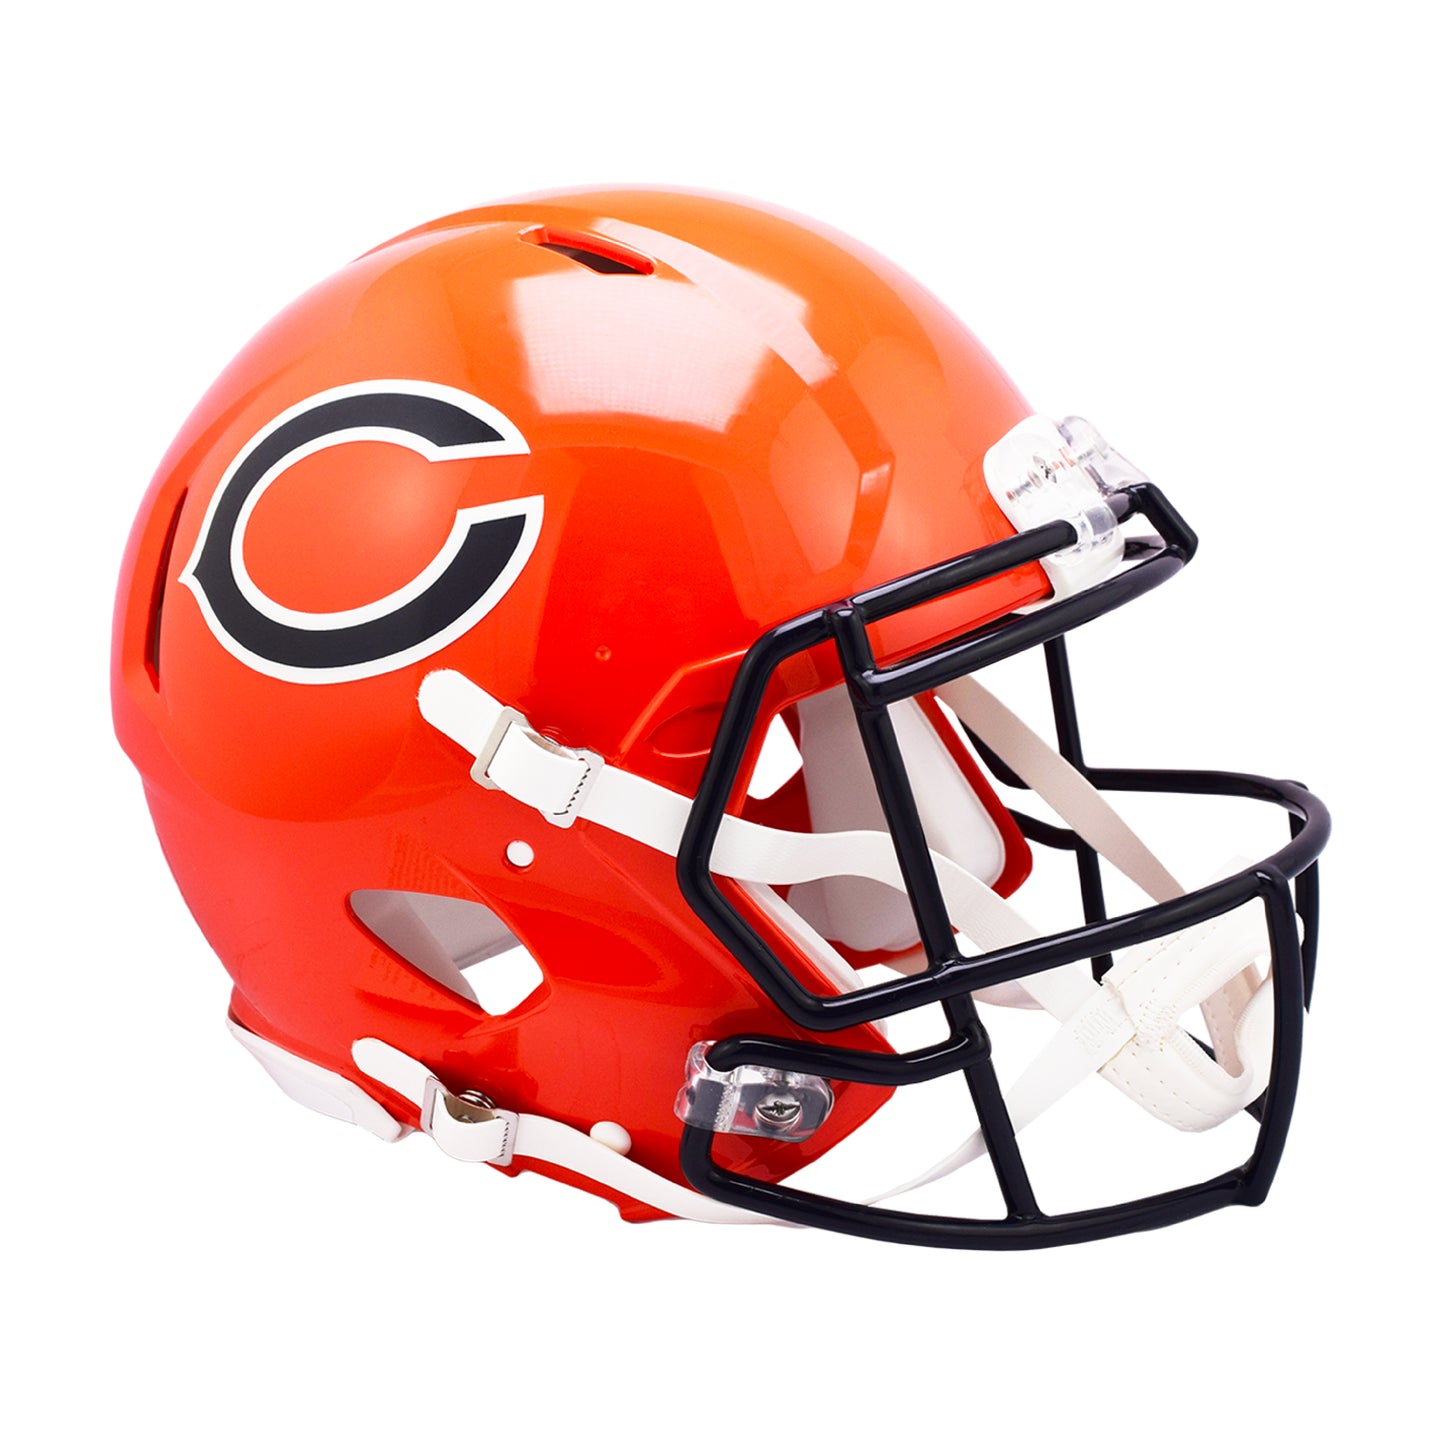 Chicago Bears Riddell On-Field Alternate Full Size Speed Authentic Football Helmet